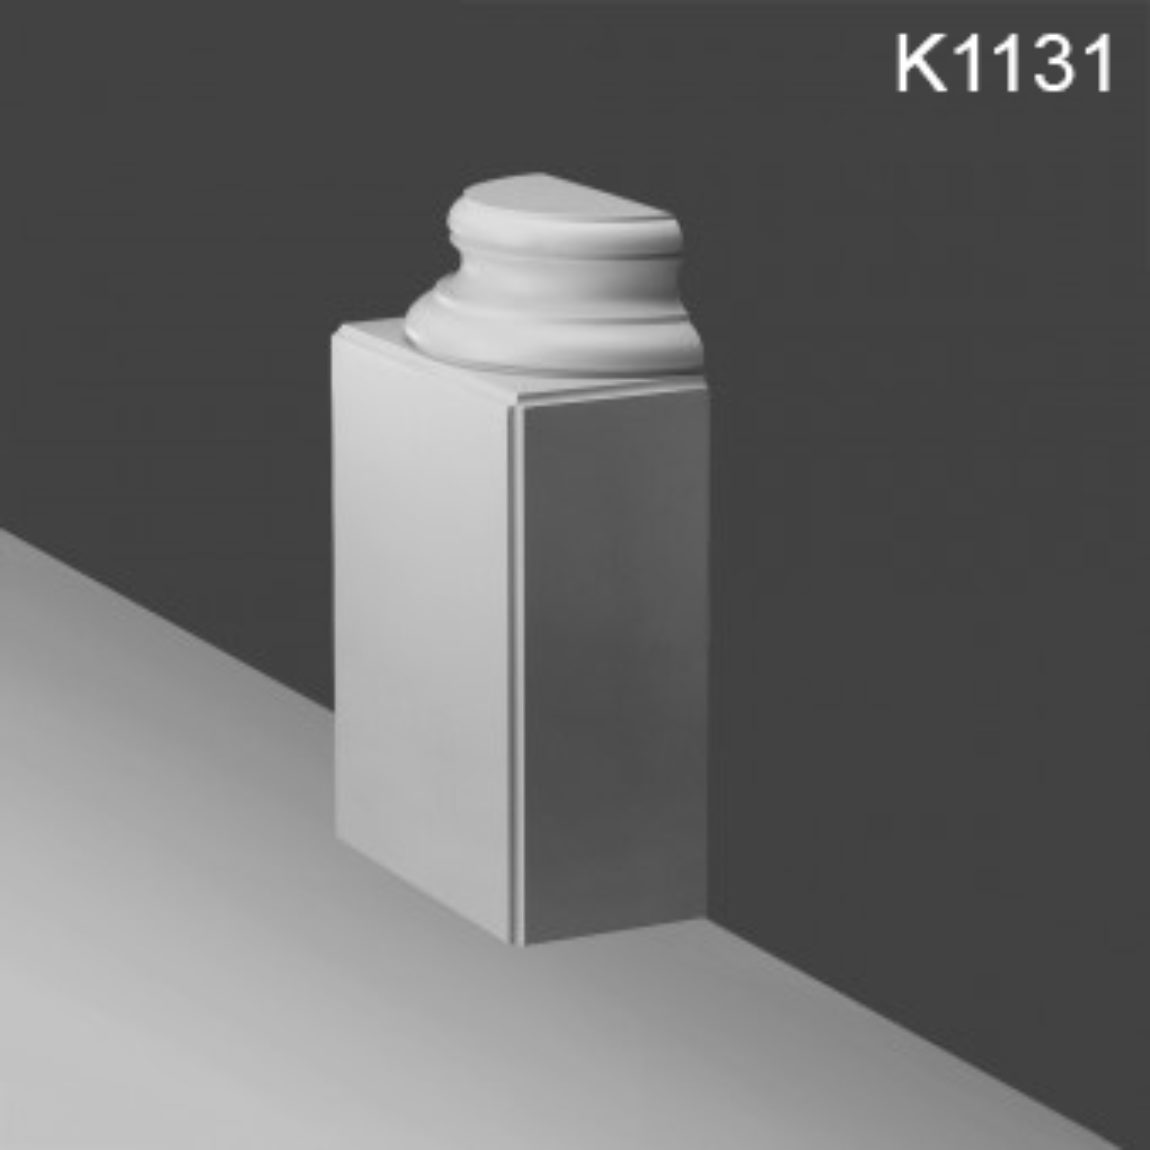 K1131